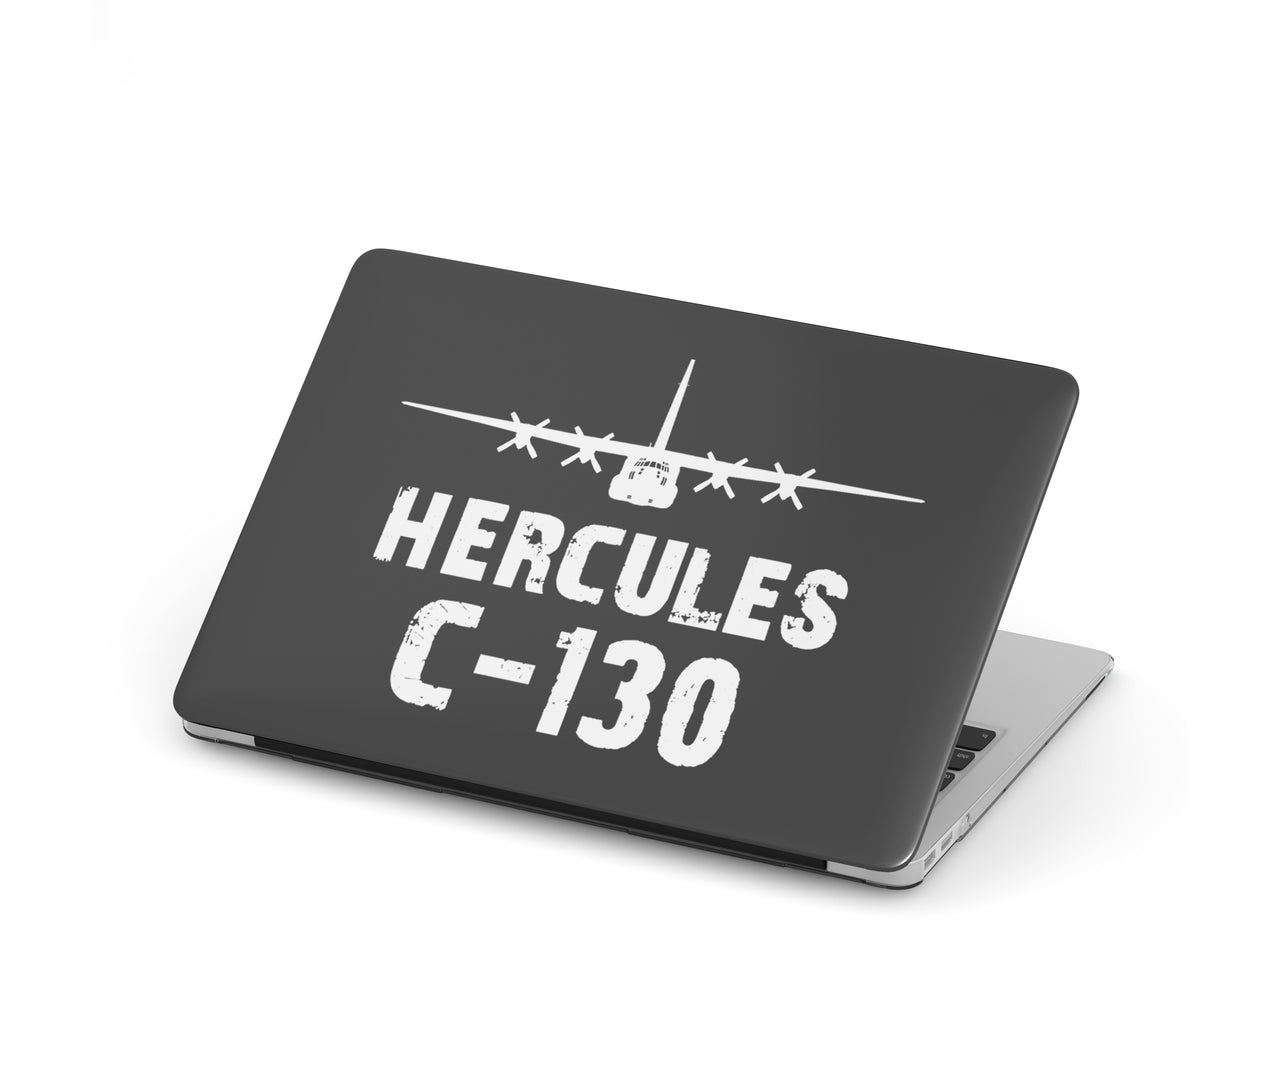 Hercules C-130 & Plane Designed Macbook Cases